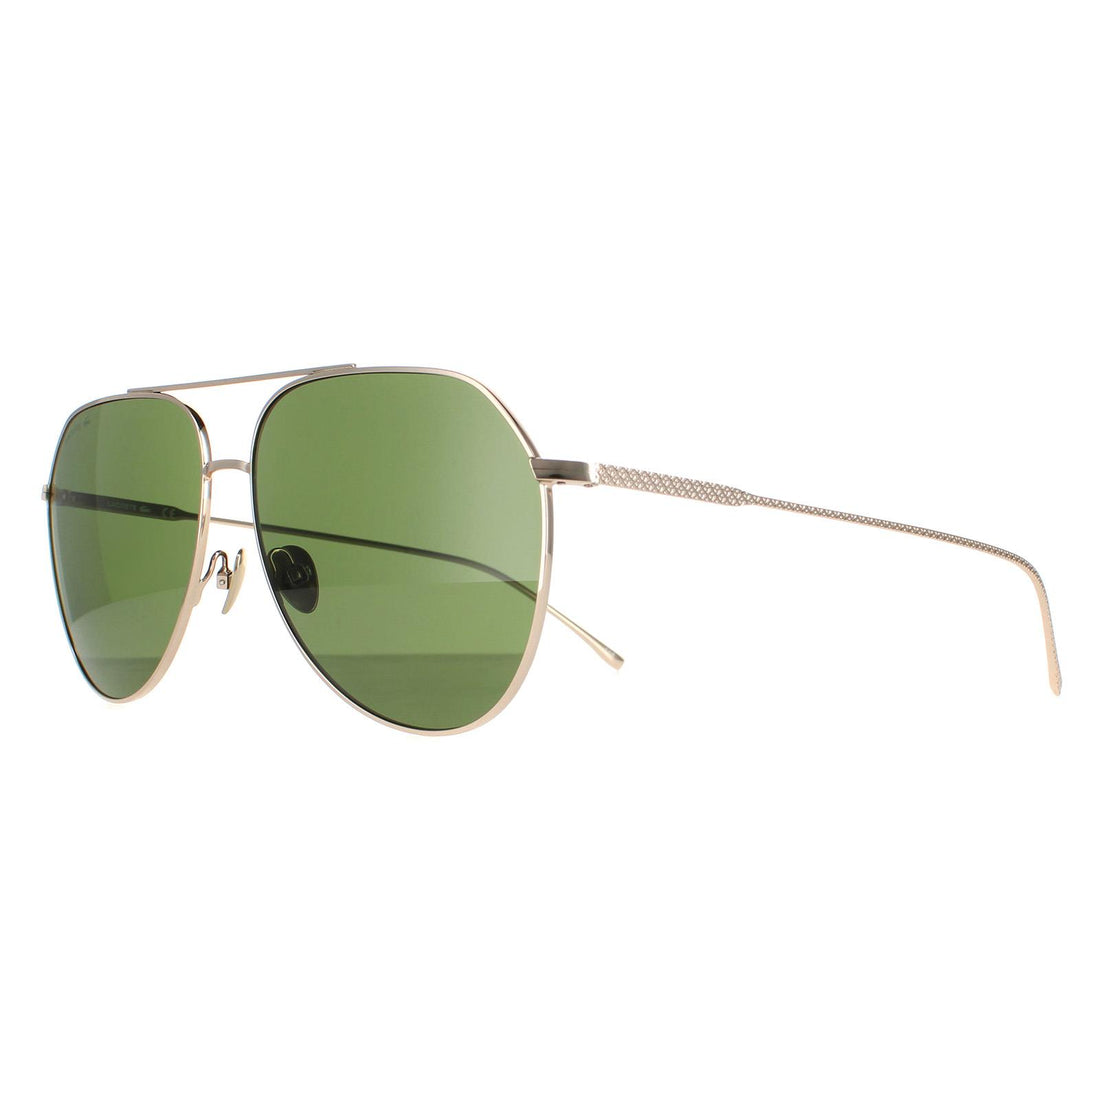 Lacoste Sunglasses L209S 714 Shiny Gold Green